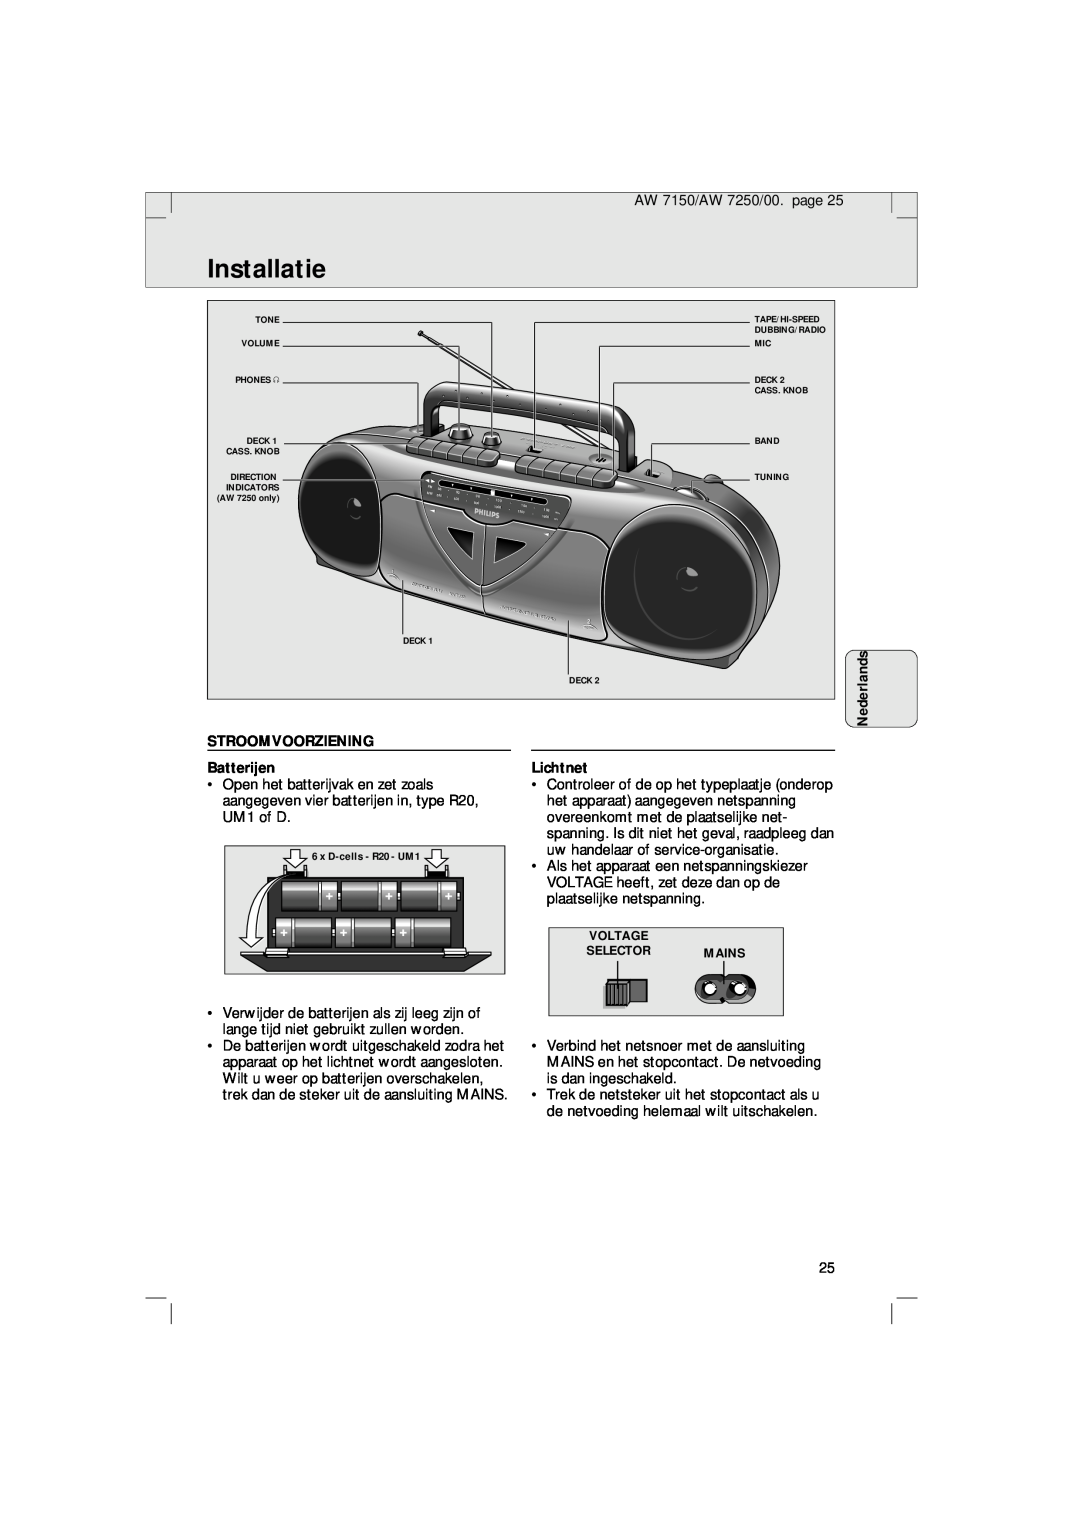 Philips AW 7250/04S, AW 7150/04S manual Installatie, STROOMVOORZIENING Batterijen, Lichtnet 